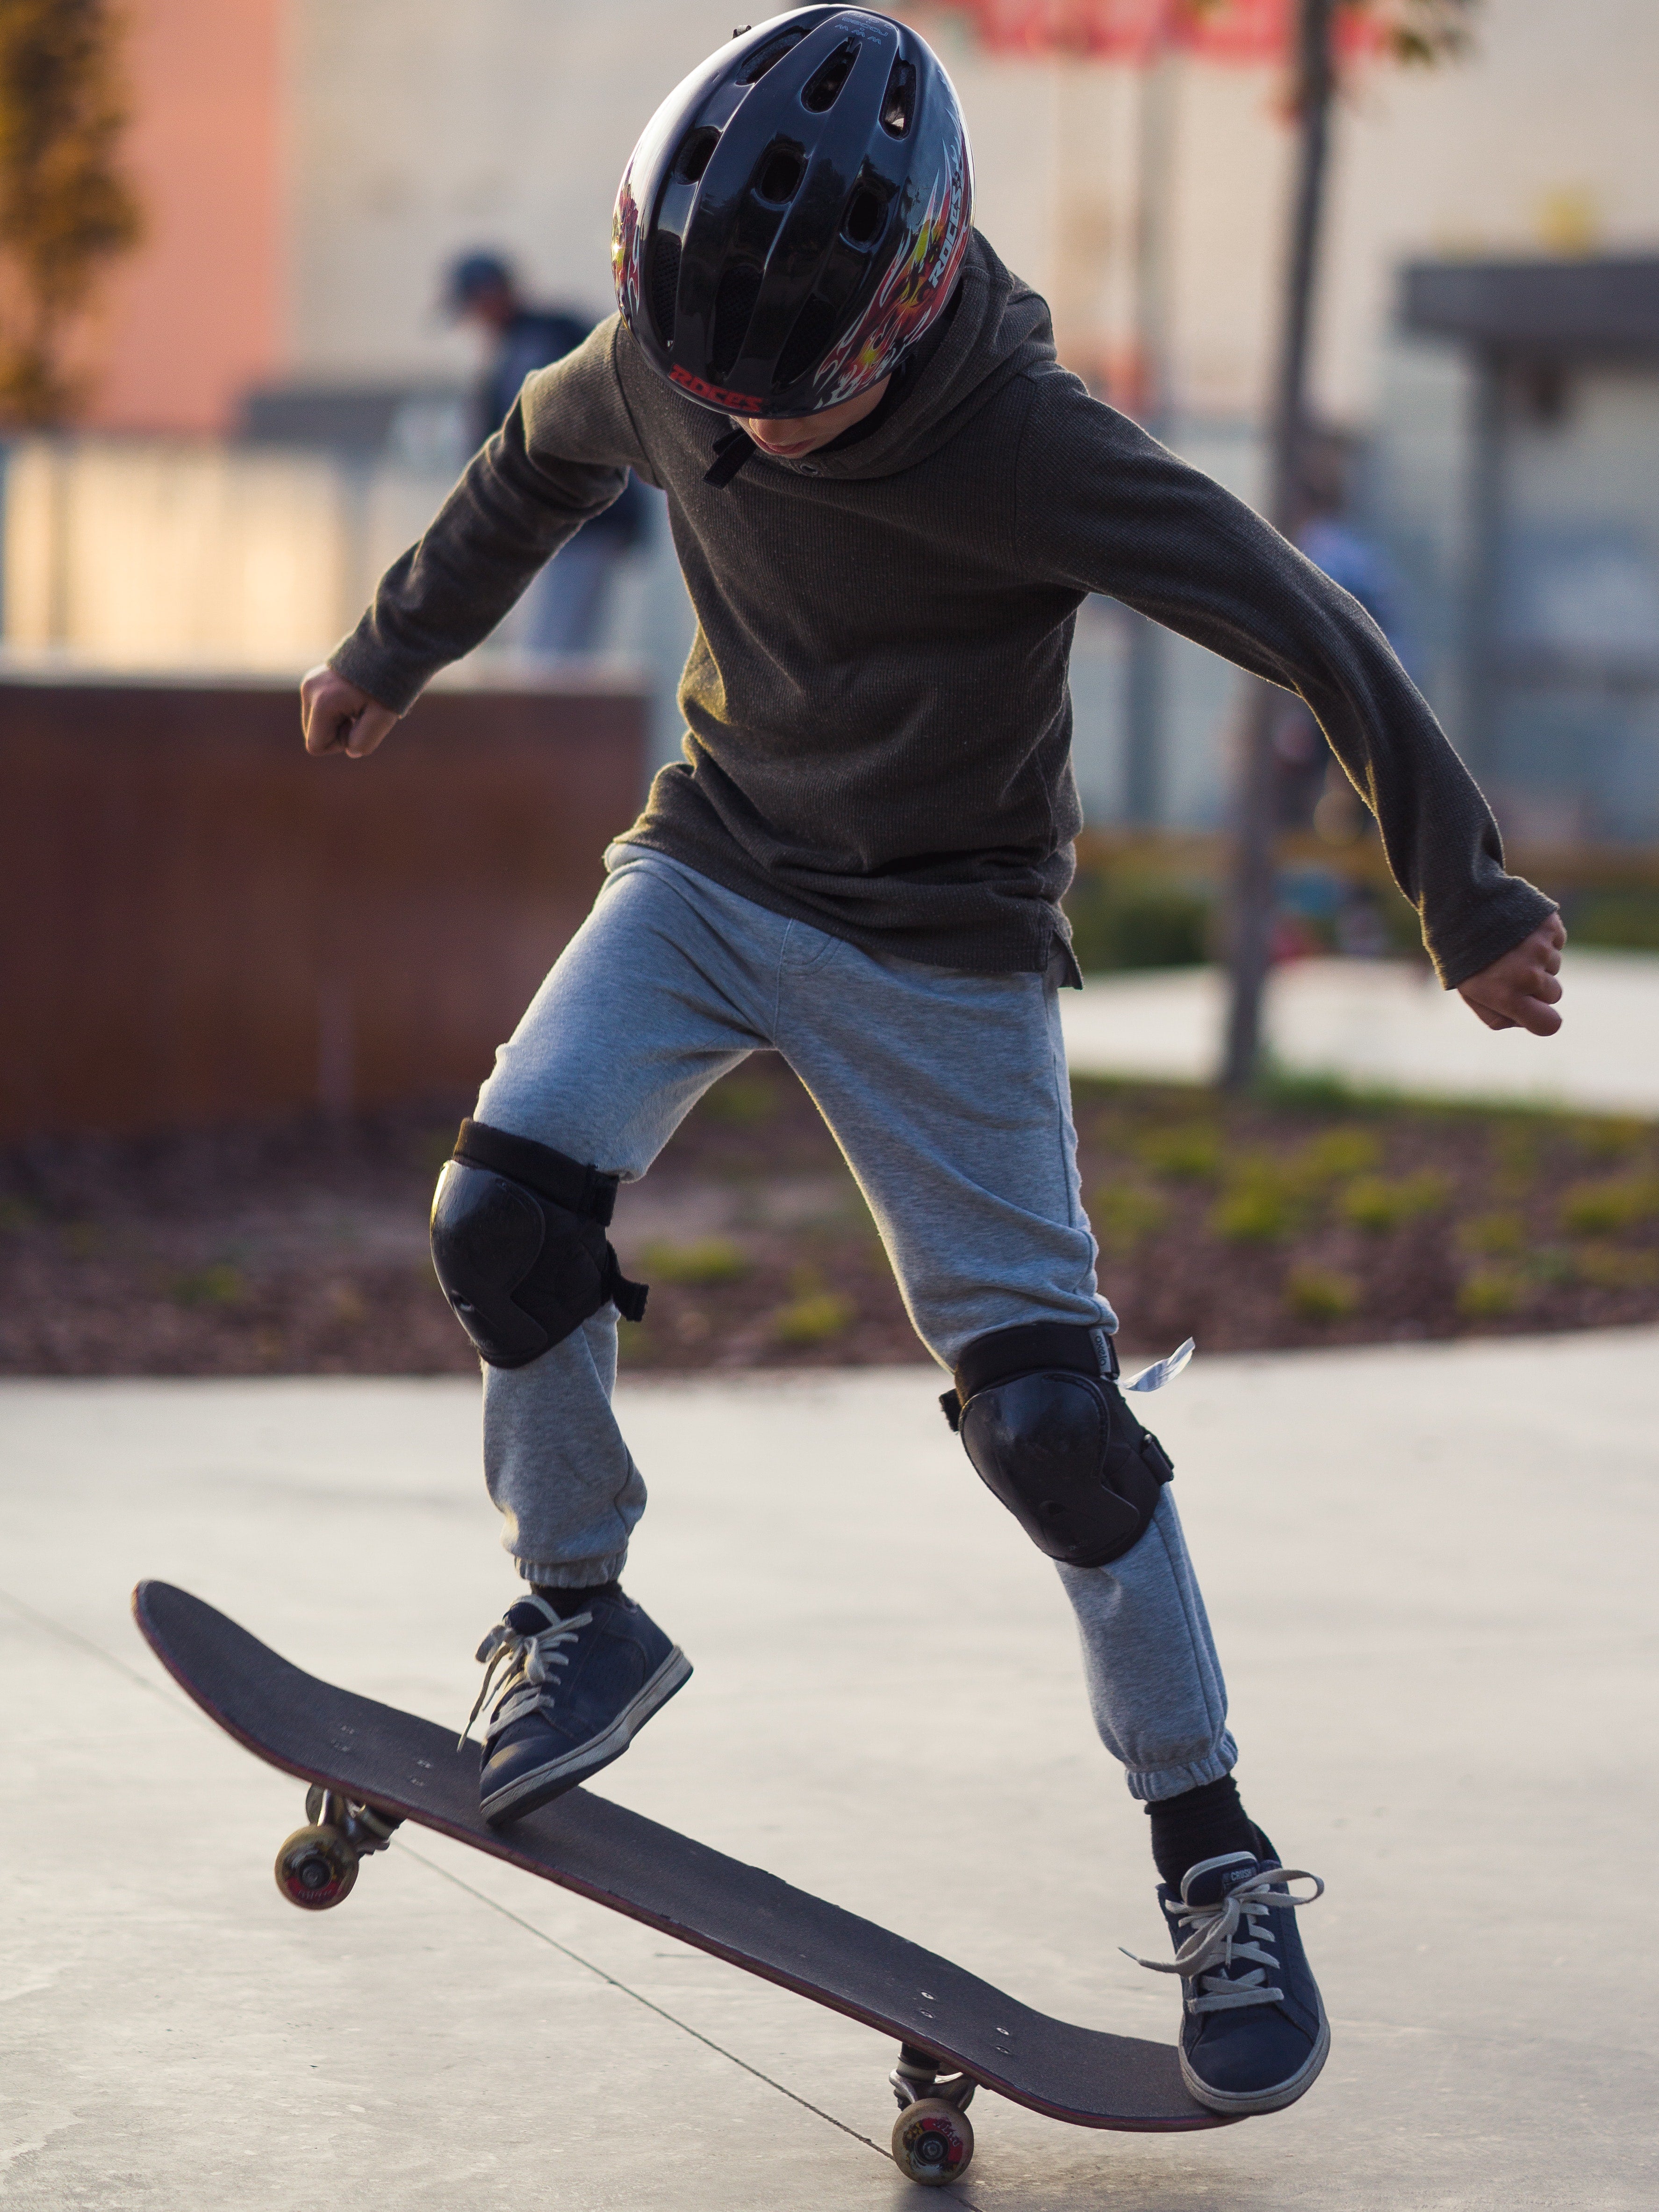 Knee Pads For Skateboarding